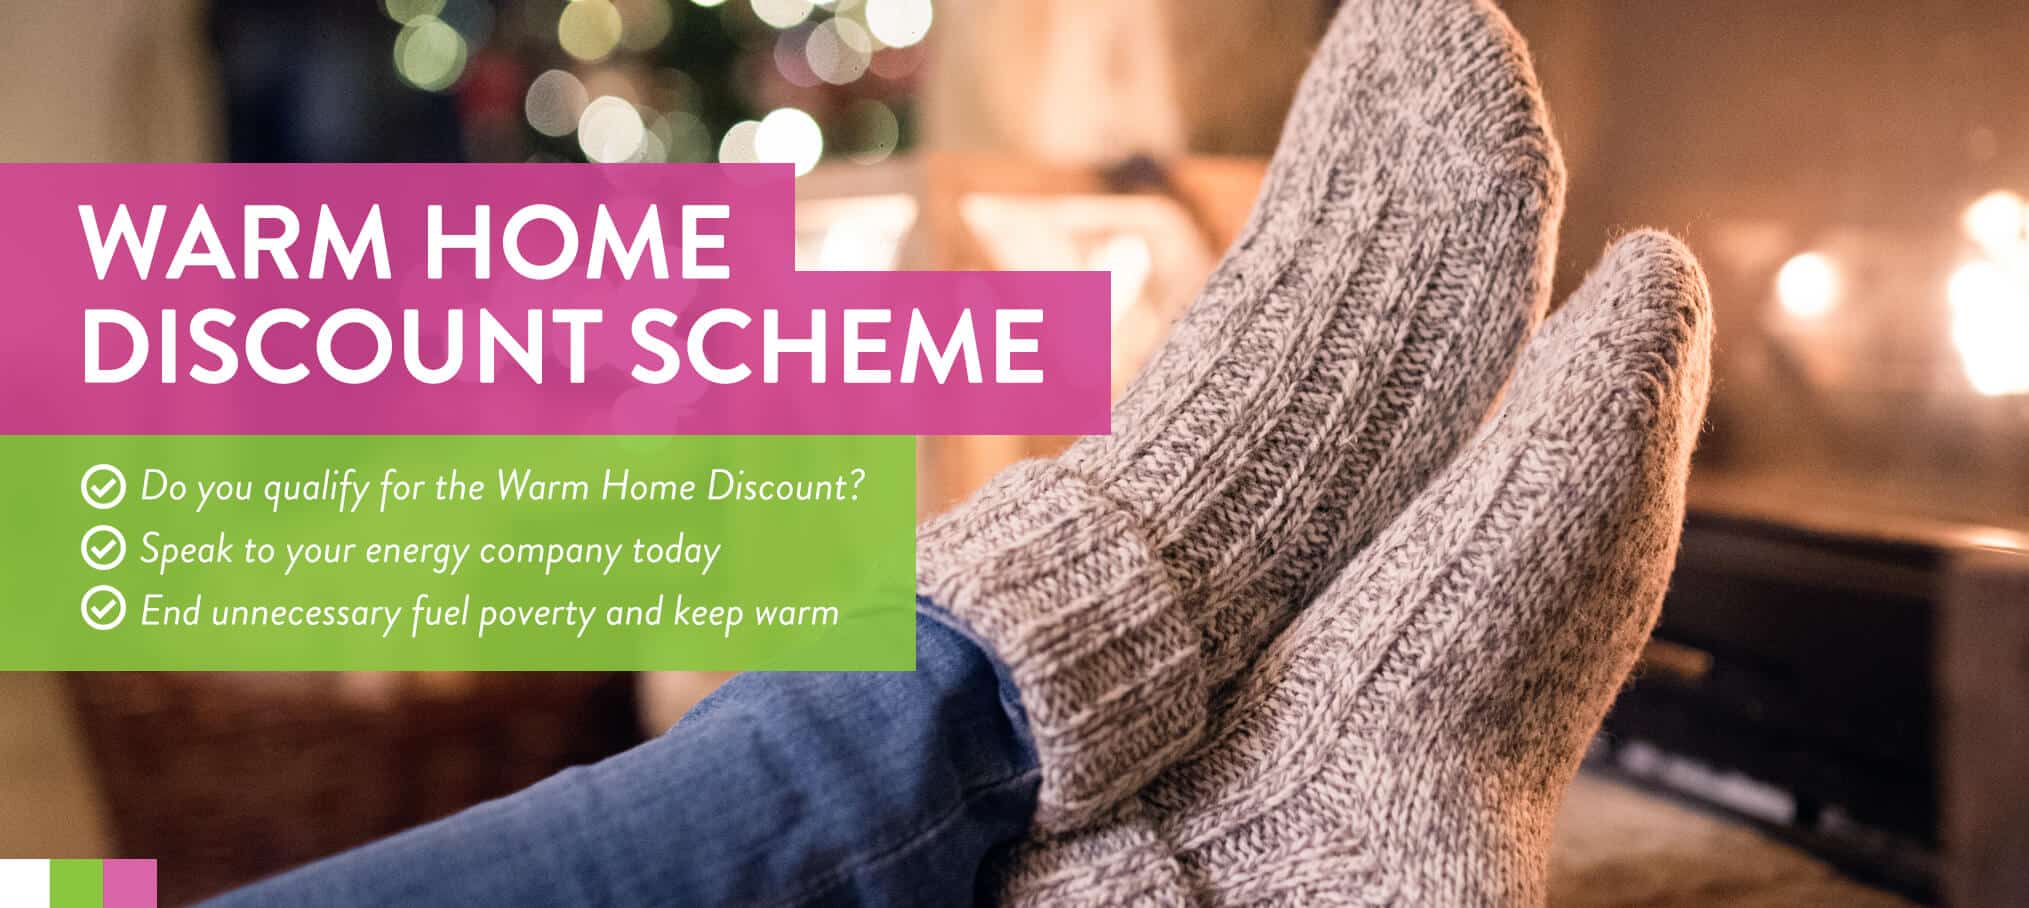 Warm home discount scheme